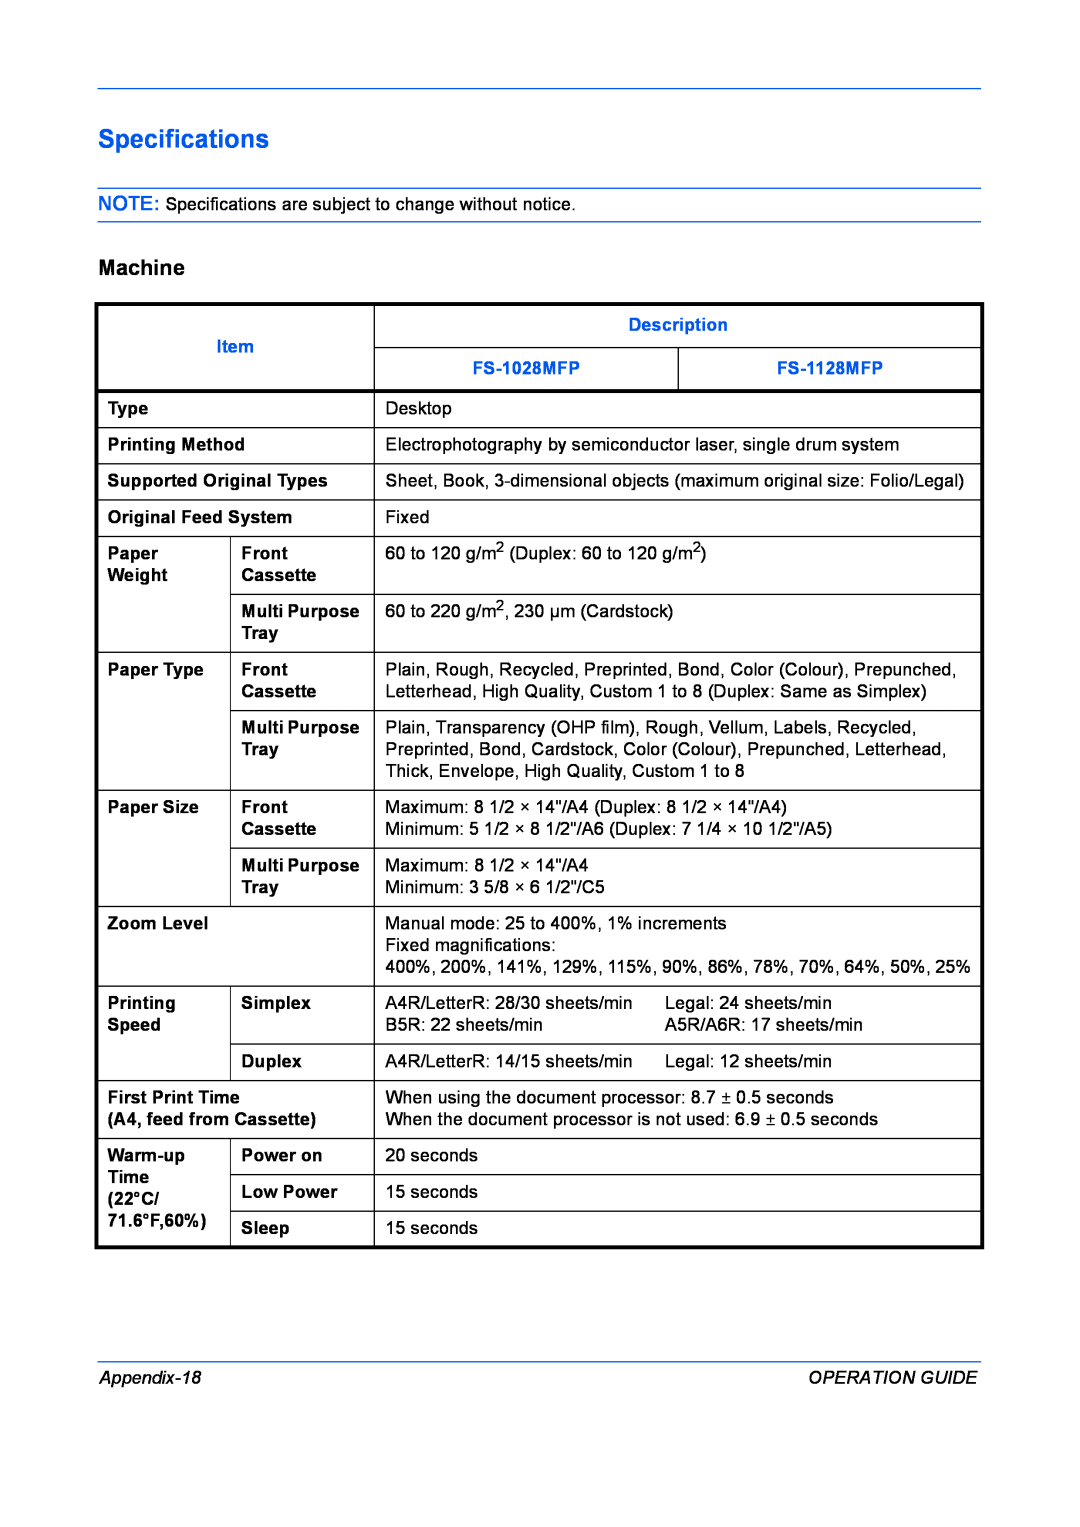 Kyocera FS-1028MFP manual Specifications, Machine, Description, FS-1128MFP, Appendix-18, Operation Guide 